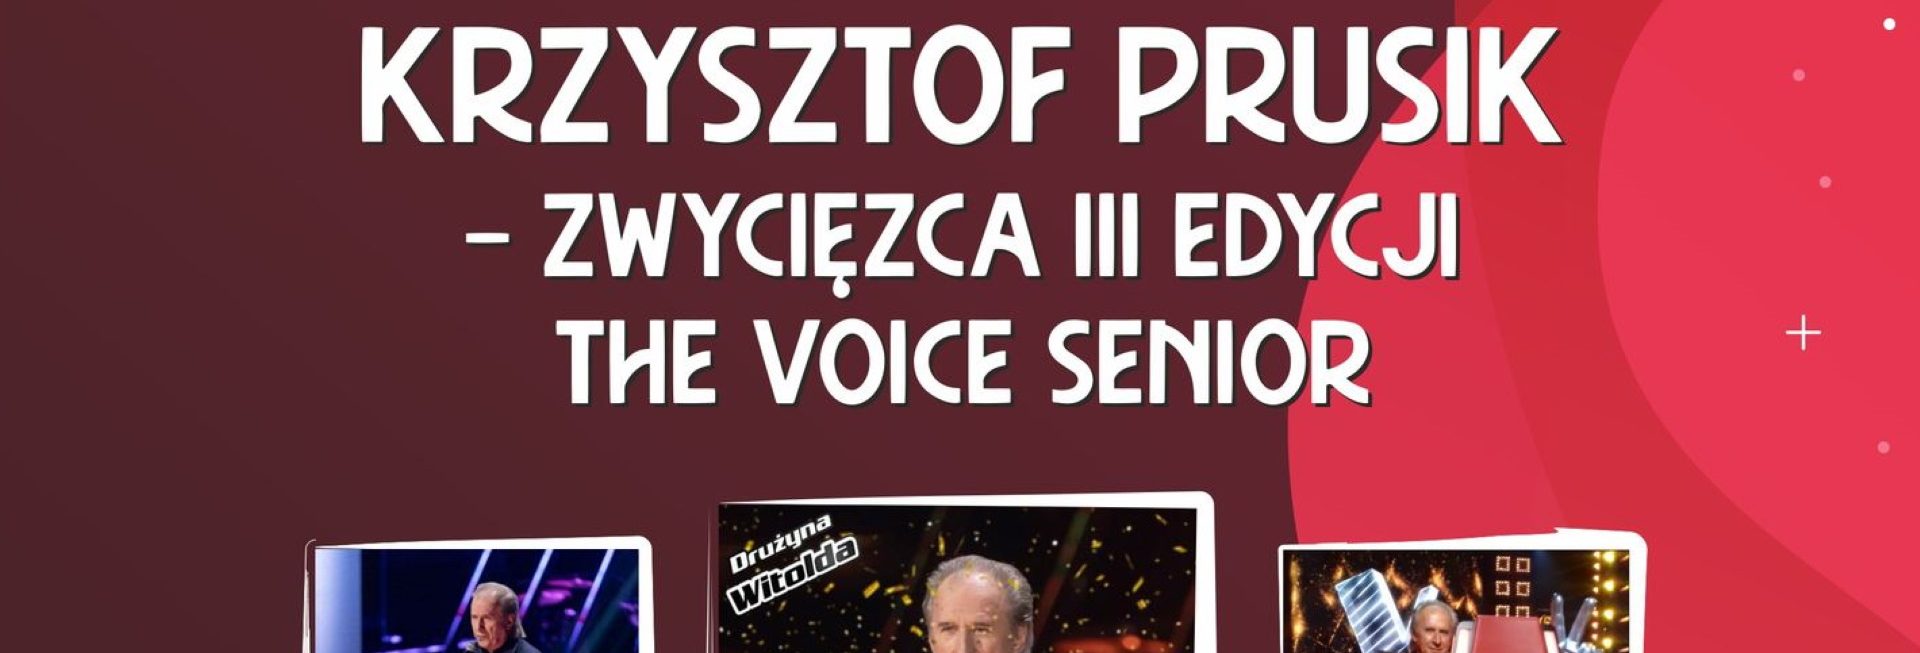 Plakat zapraszający w środę 8 marca 2023 r. do Kętrzyna na koncert z okazji DNIA KOBIET - Krzysztof Prusik Kętrzyn 2023.